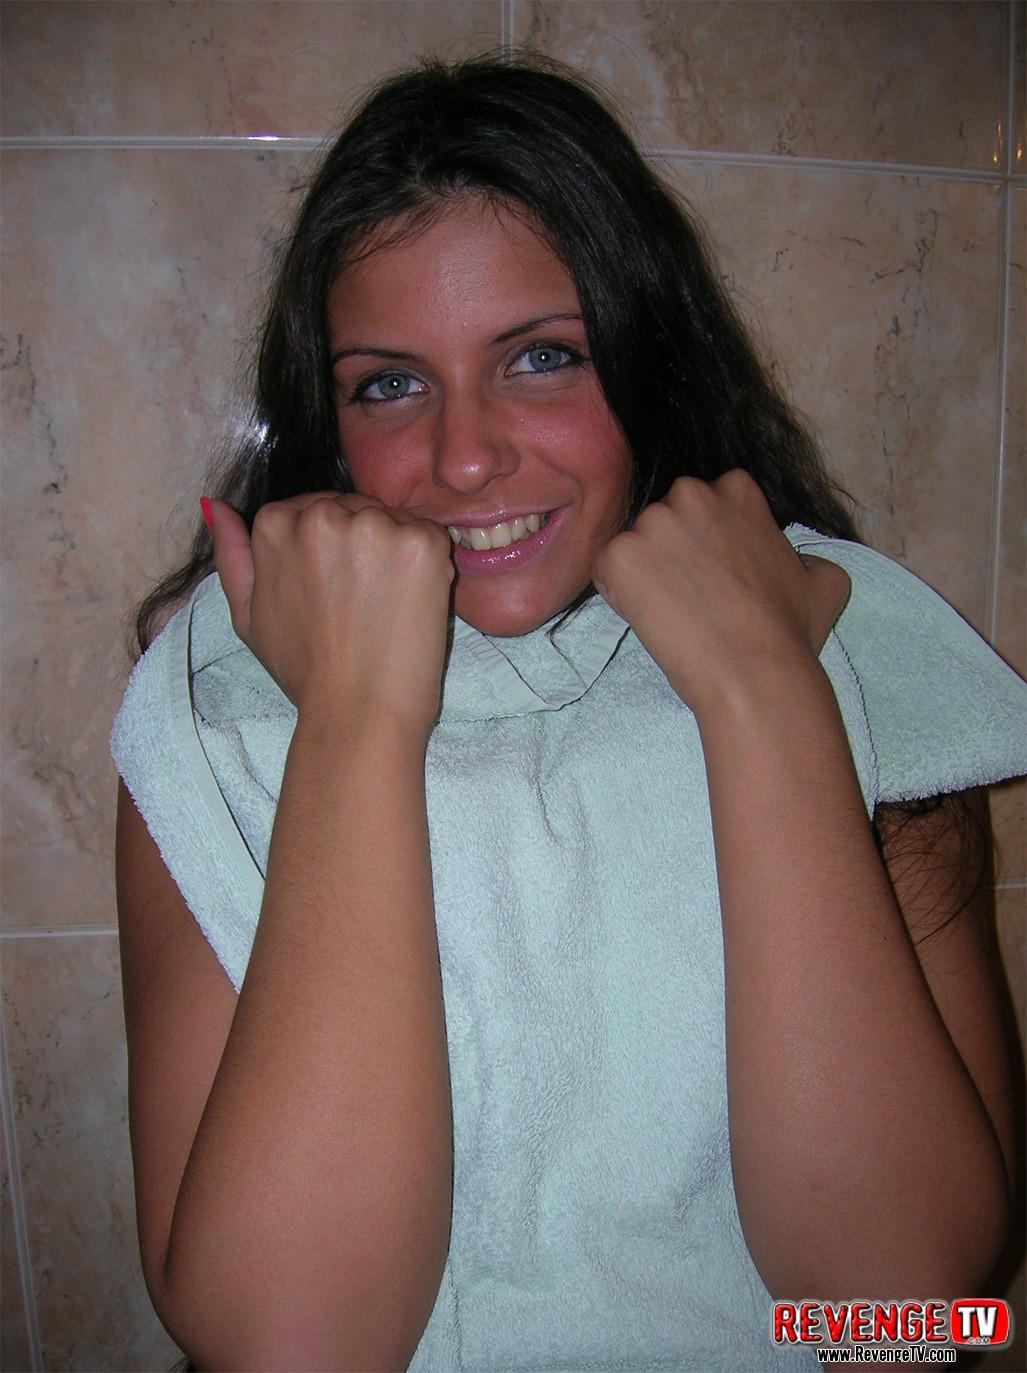 Irina, 18 ans, nue et scintillante, fraîchement sortie de la douche.
 #77125679